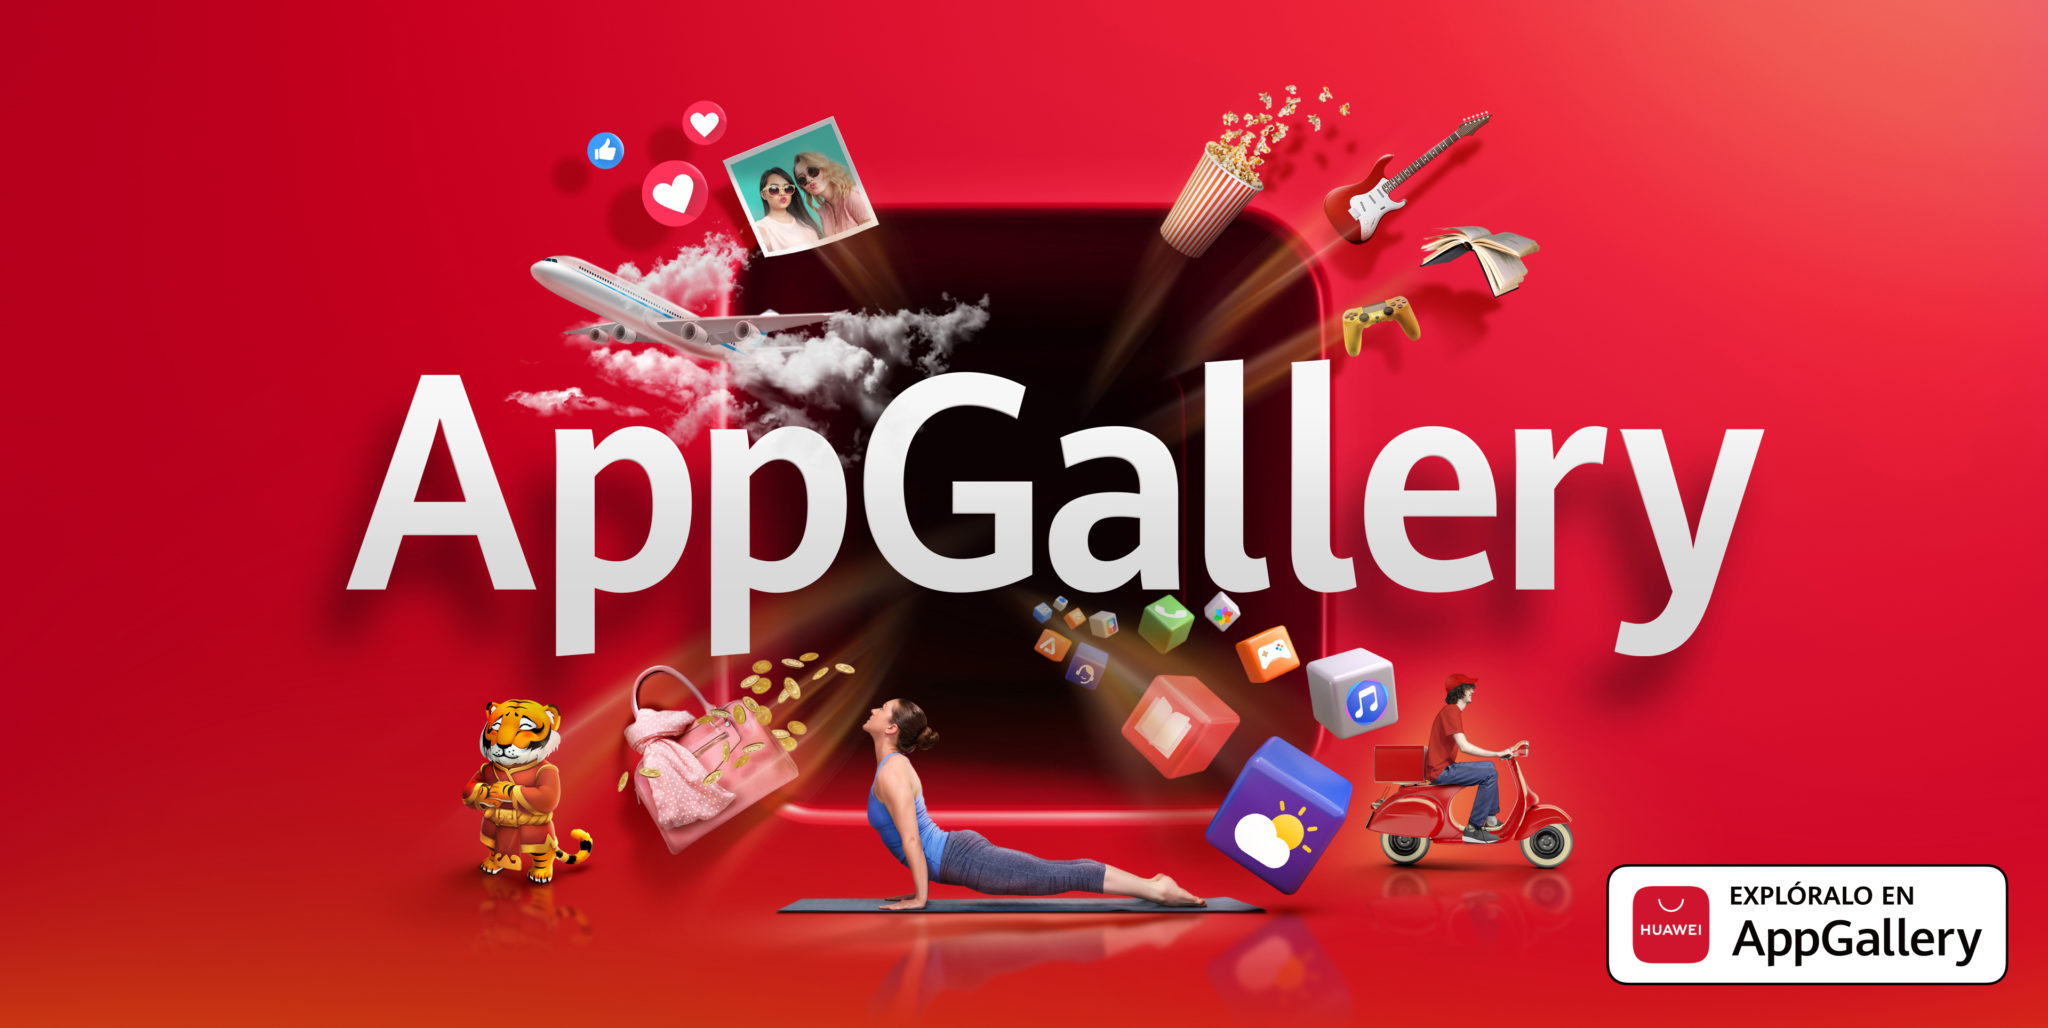 En AppGallery, la tienda de aplicaciones de Huawei, existen cientos de juegos de acción ideales para tener horas de diversión desde cualquier lugar.